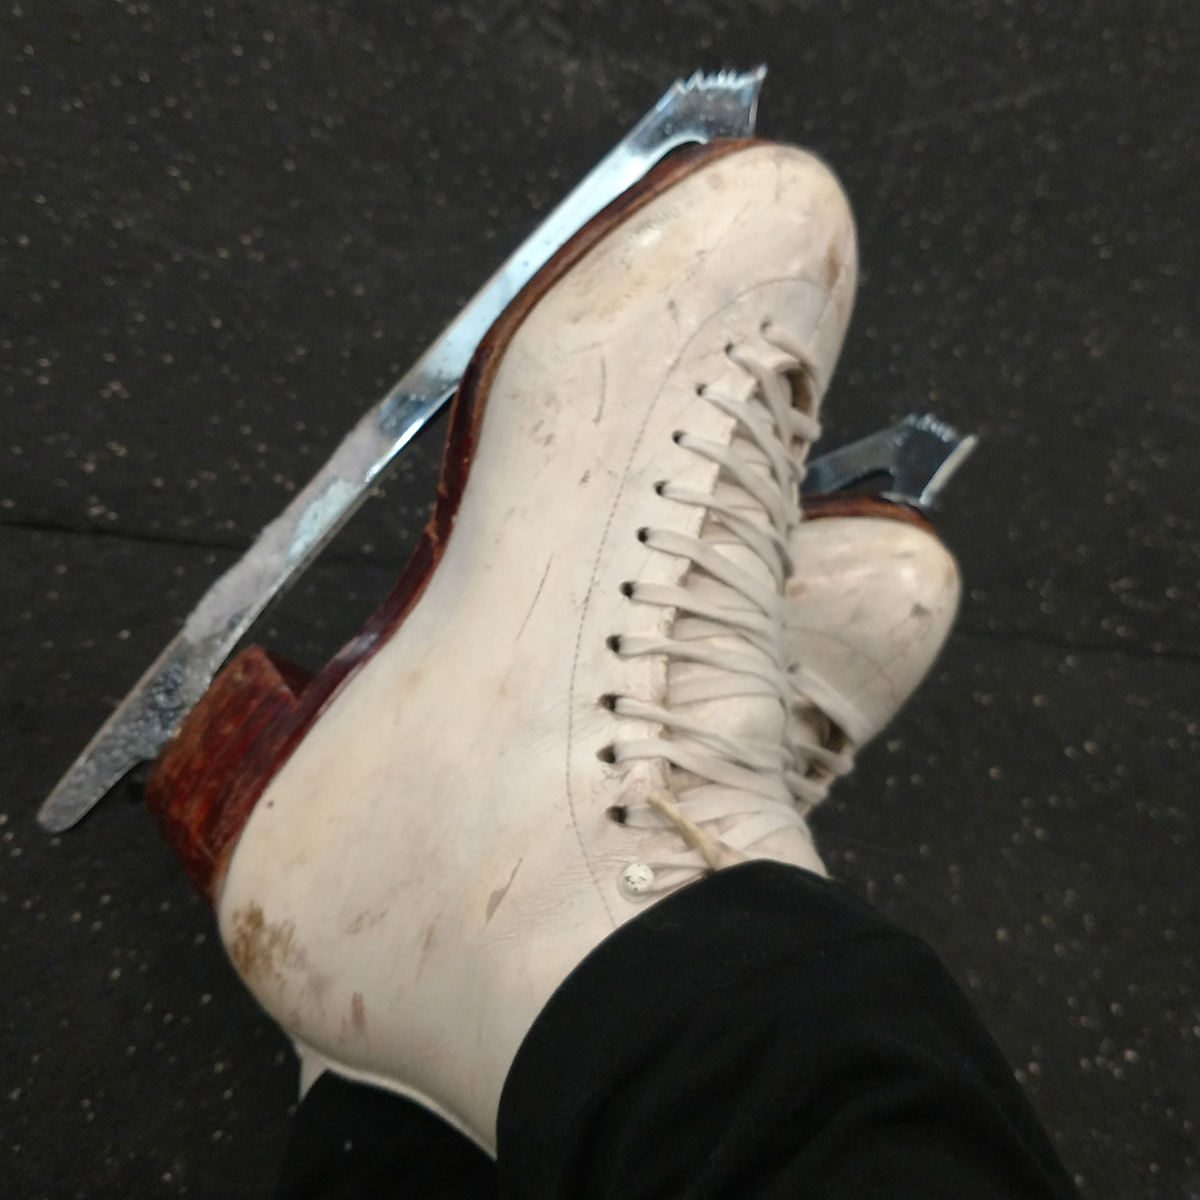 A pair of used skates on crossed feet.